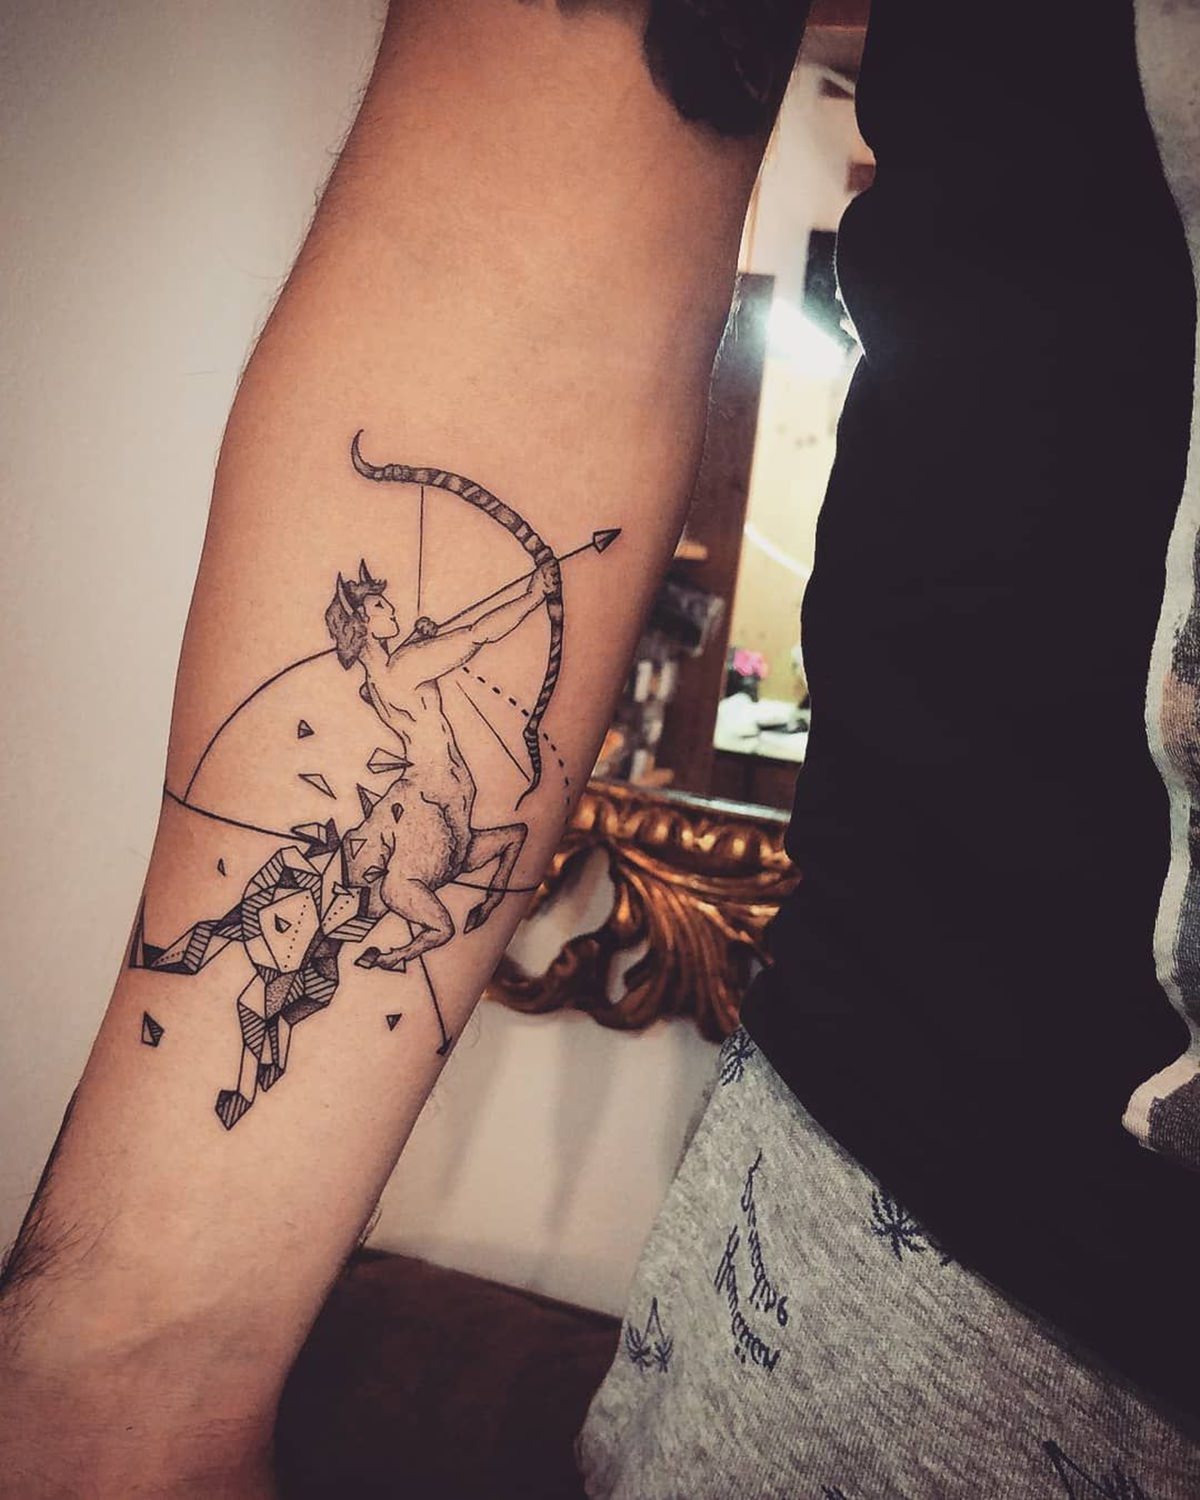 Tatuagem feita no braço do signo de capricórnio